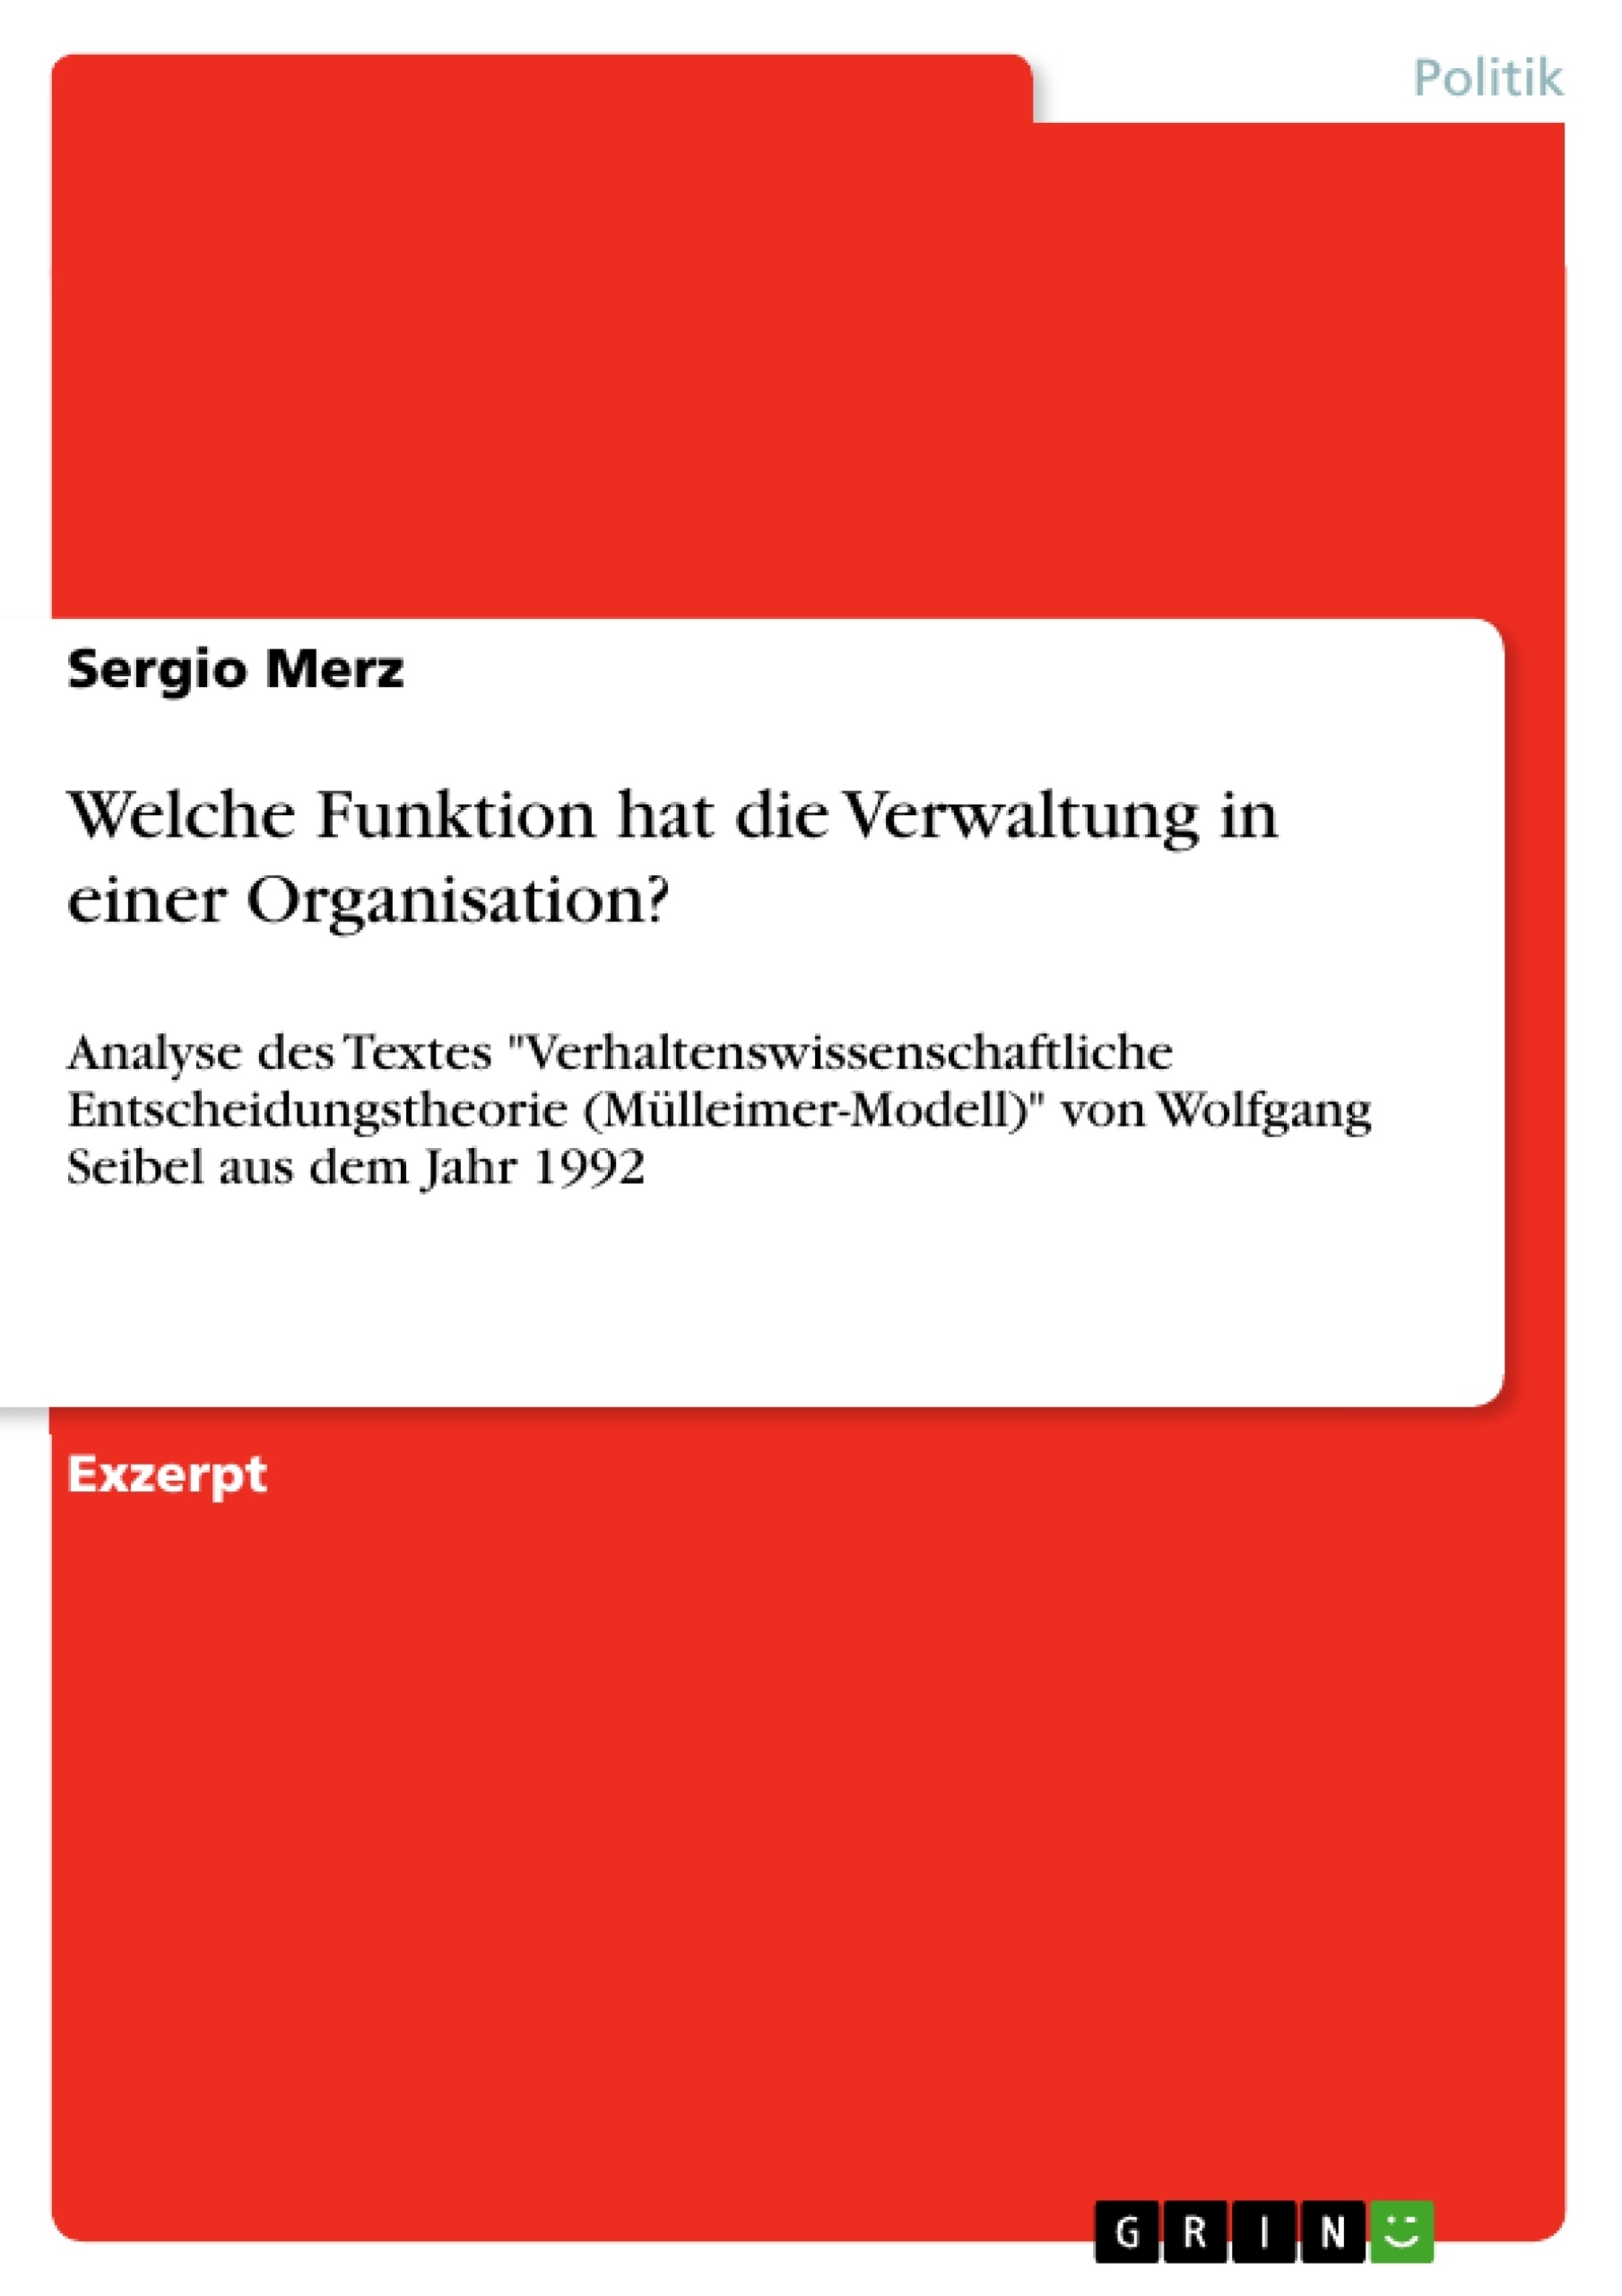 Title: Welche Funktion hat die Verwaltung in einer Organisation?